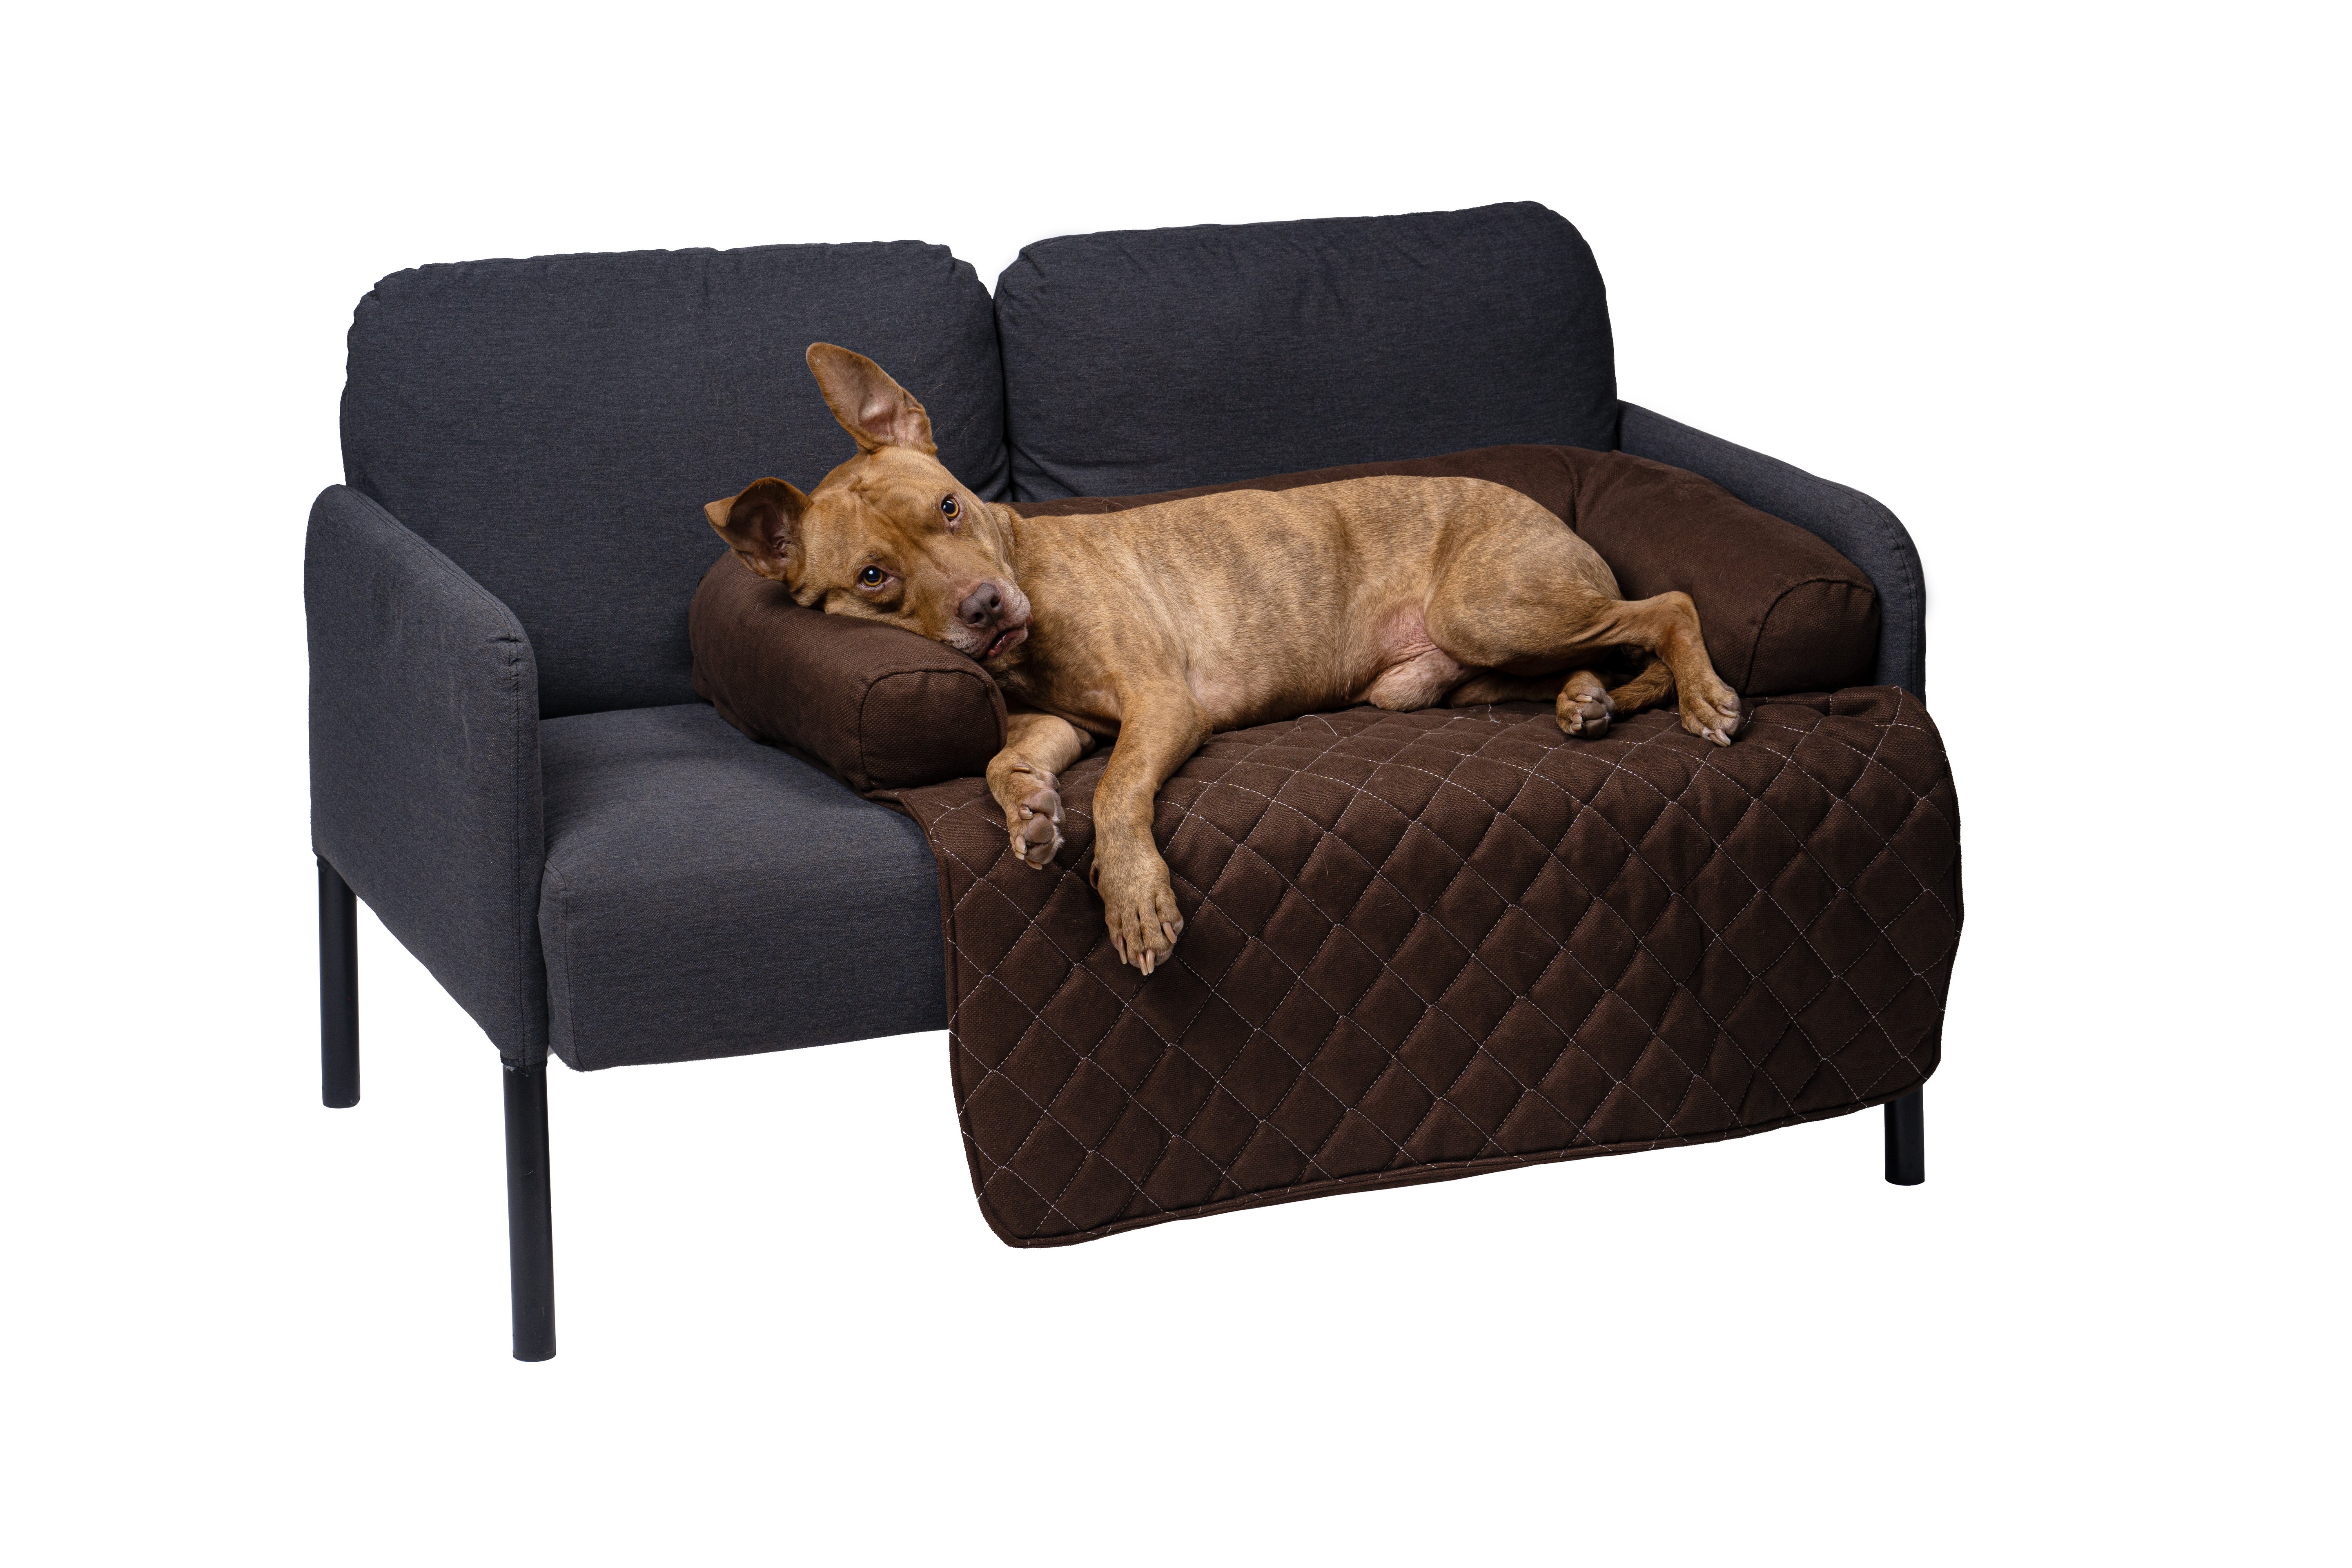 Lous exclusiver Sofaschutz Sofadecke mit Rand Hundedecke Hundebett fürs Sofa 2